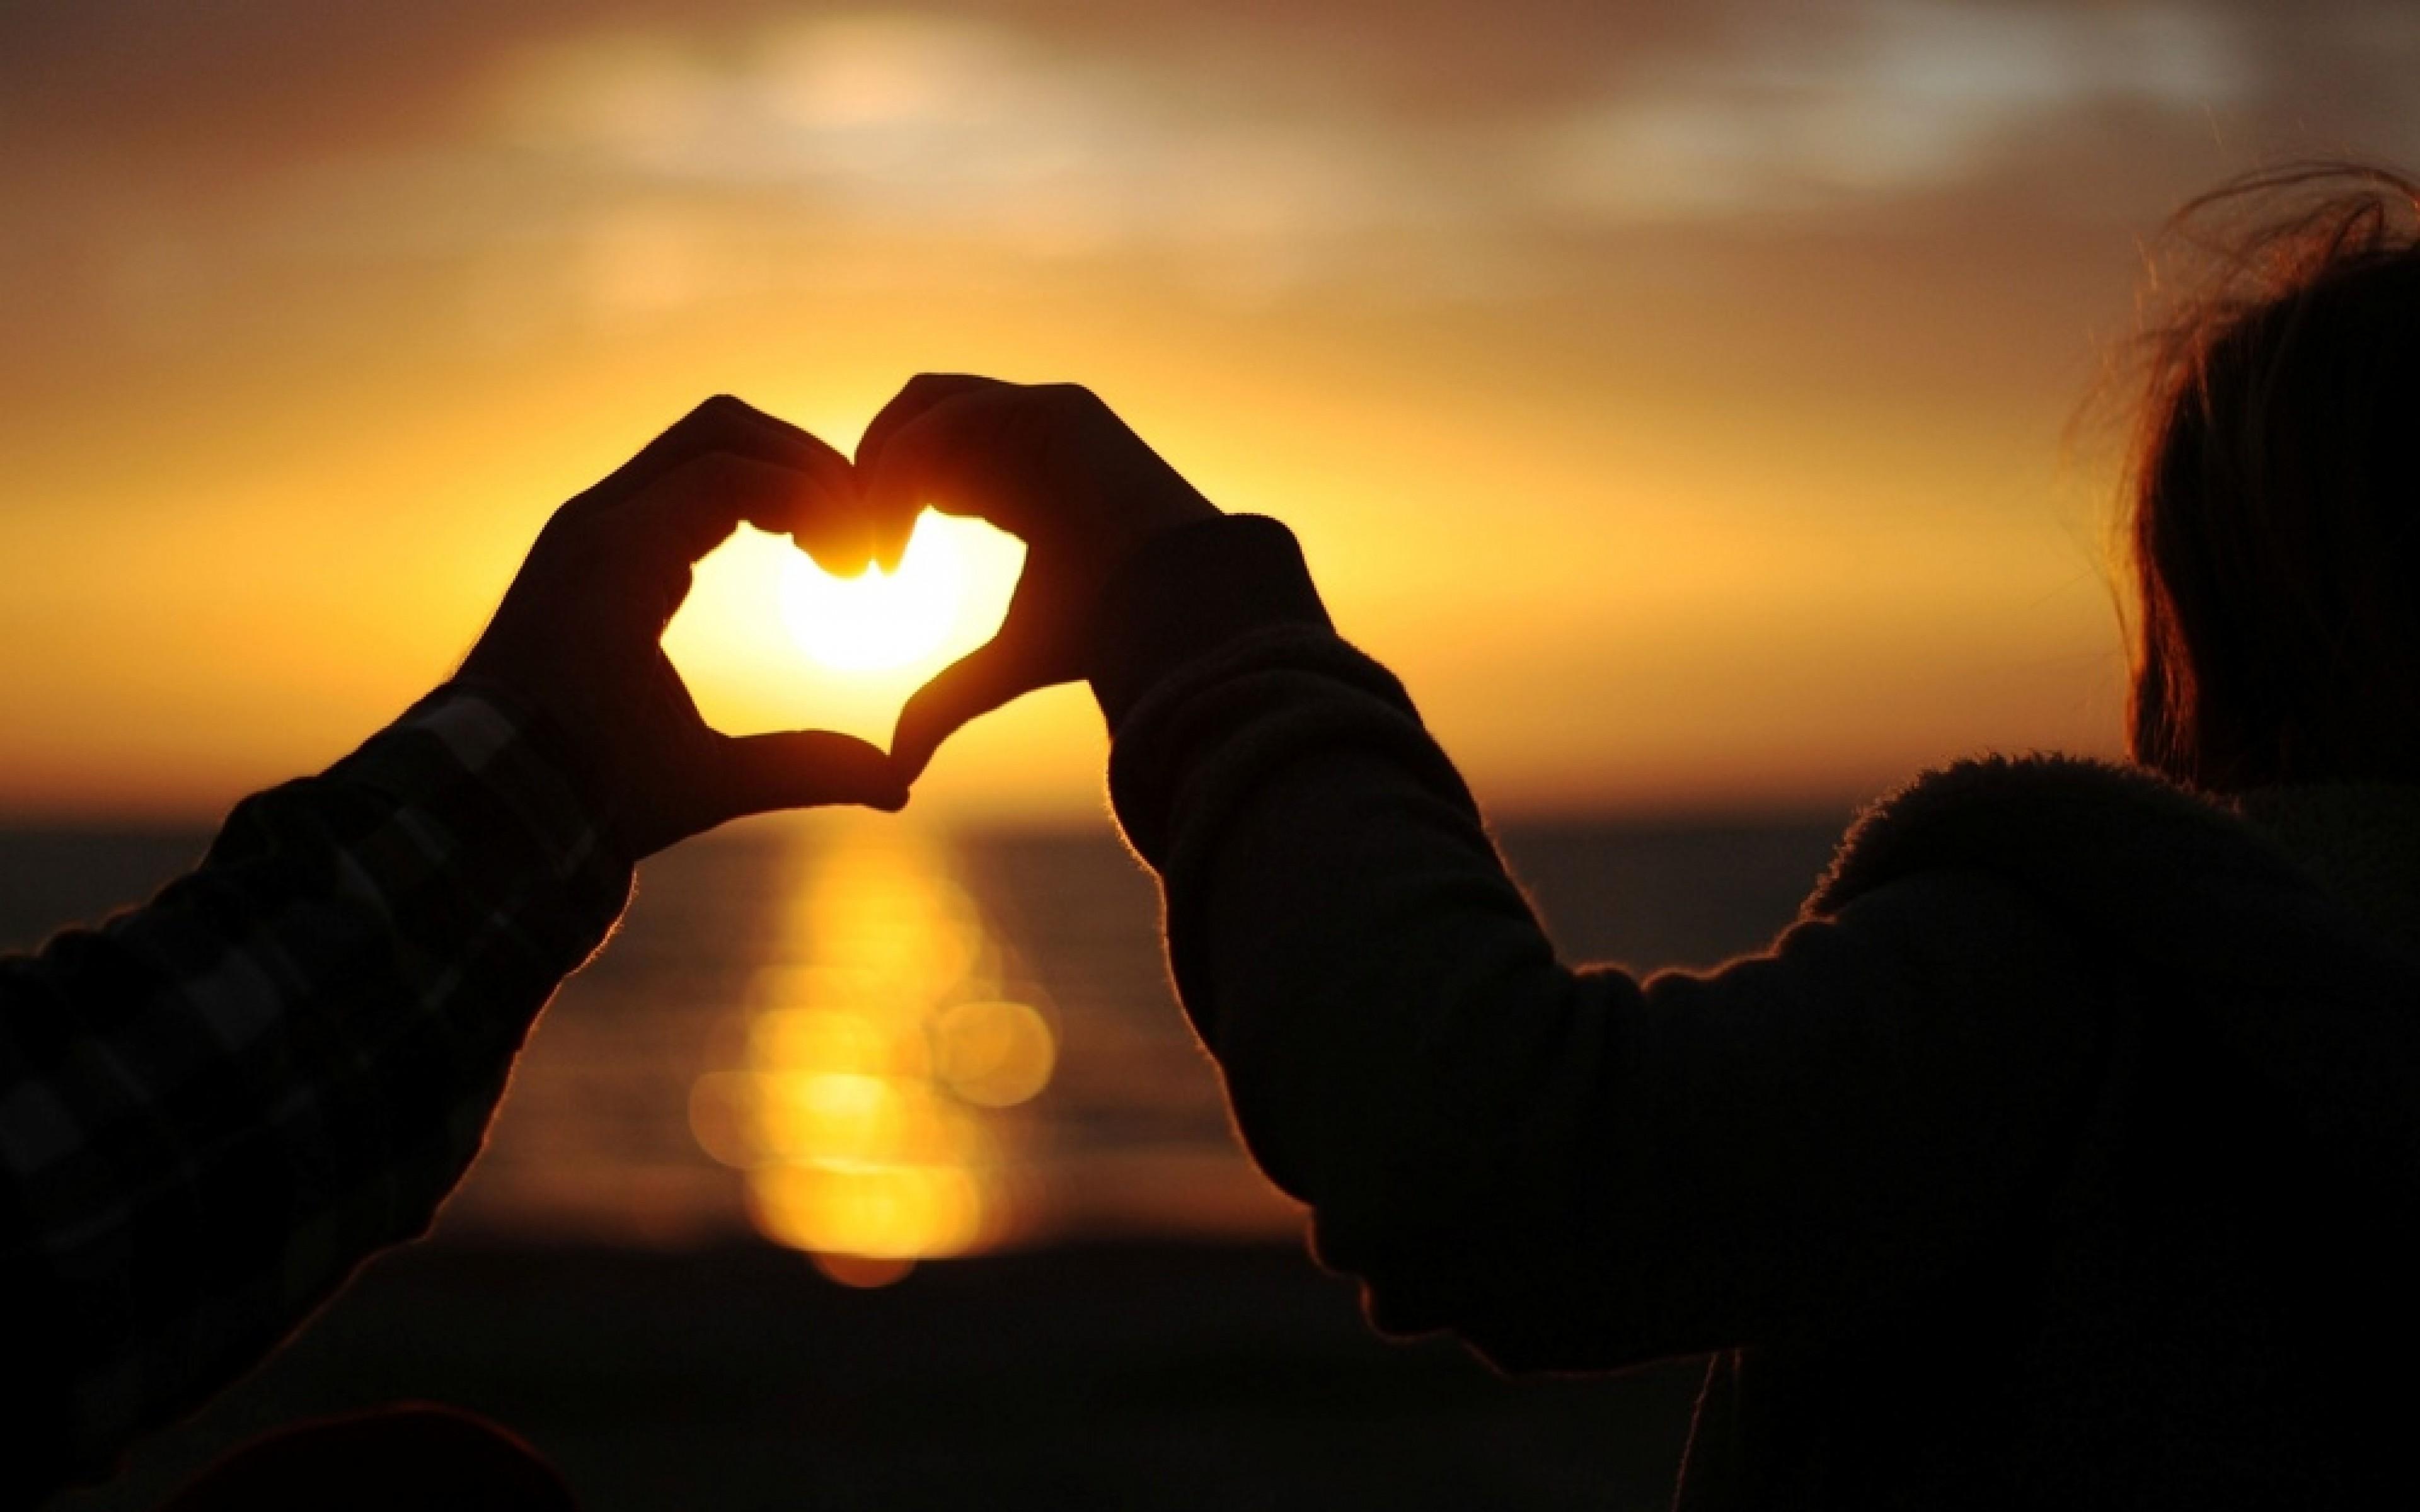 Hands Heart Shape boy girl enjoy sunset HD photo wallpaper